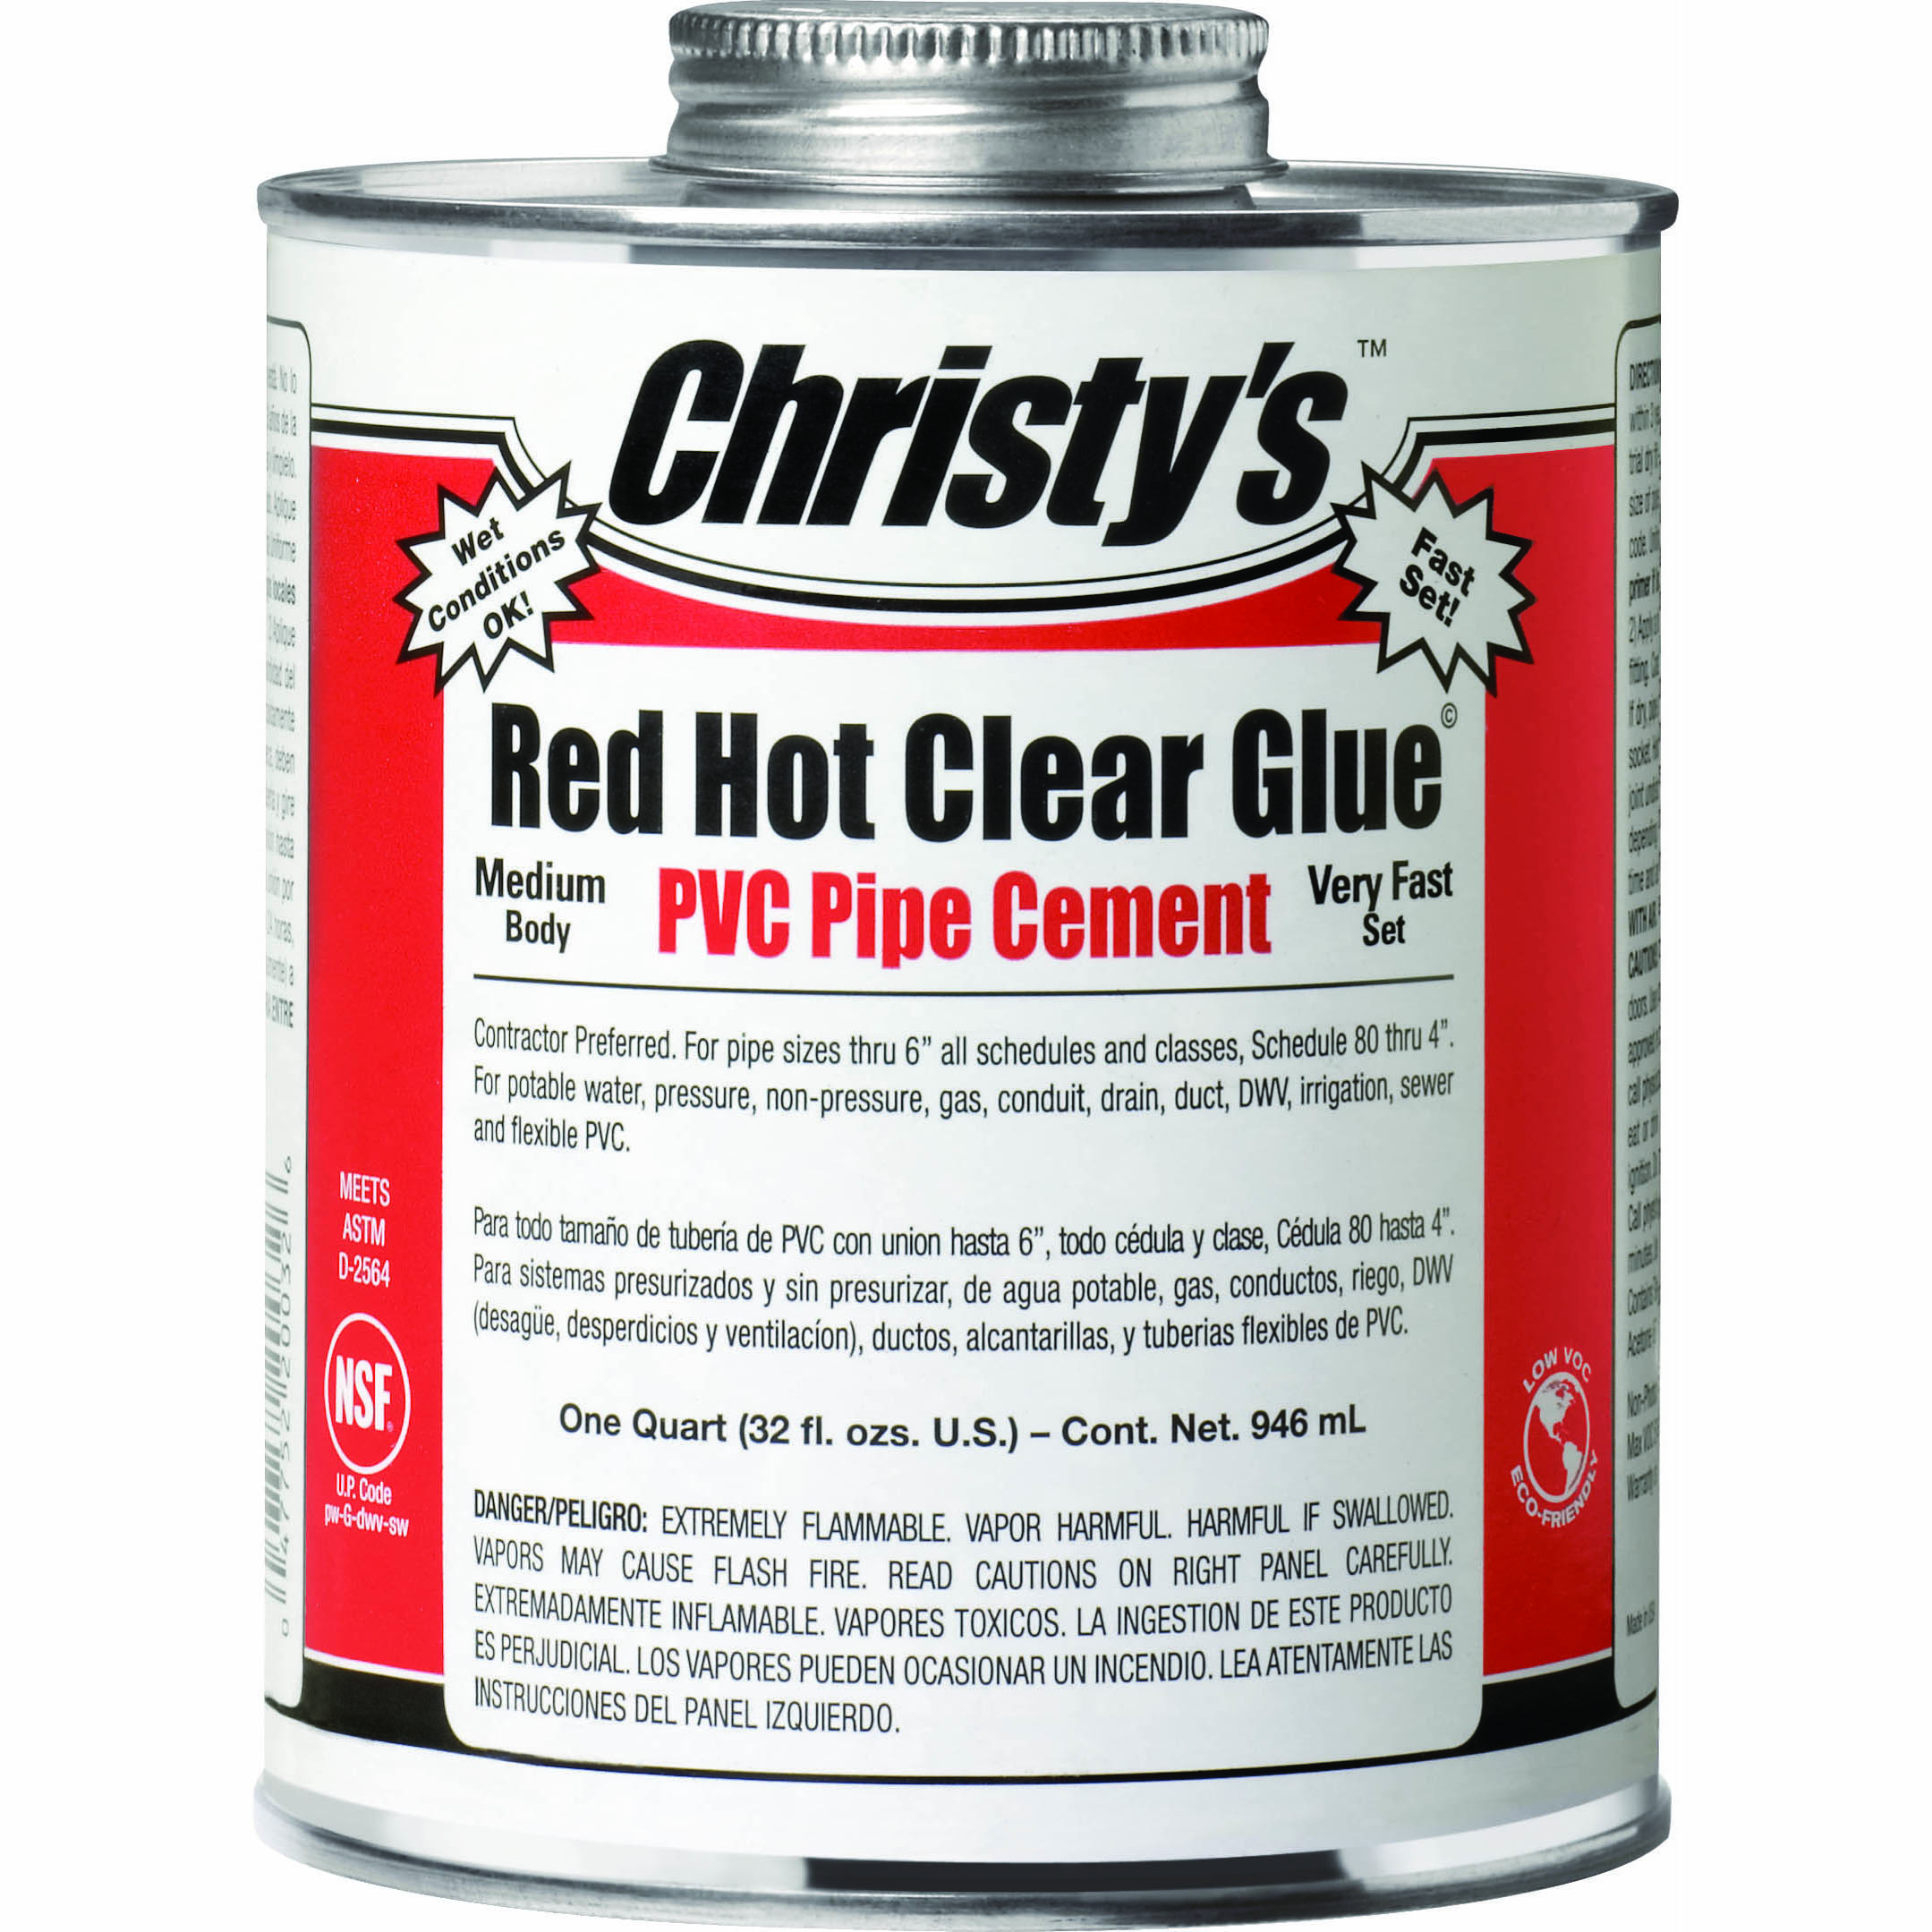 Red Hot Clear Glue